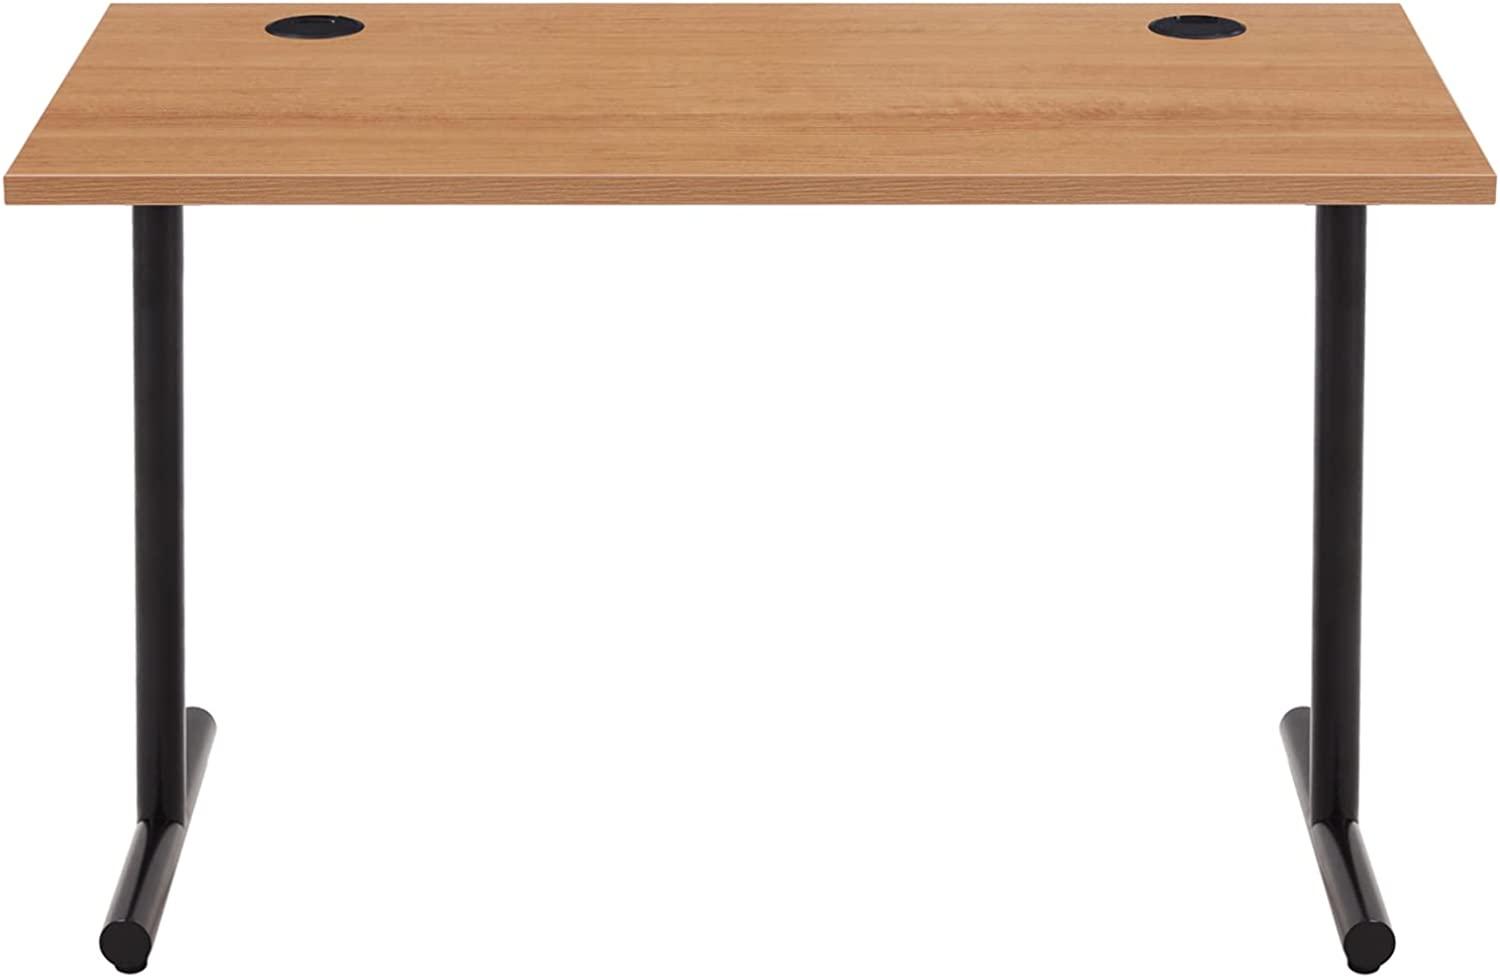 Amazon Marke - Movian Schlichter Schreibtisch, buchefarbene Platte und schwarzes Gestell, 120 x 60 x 73,6 cm Bild 1